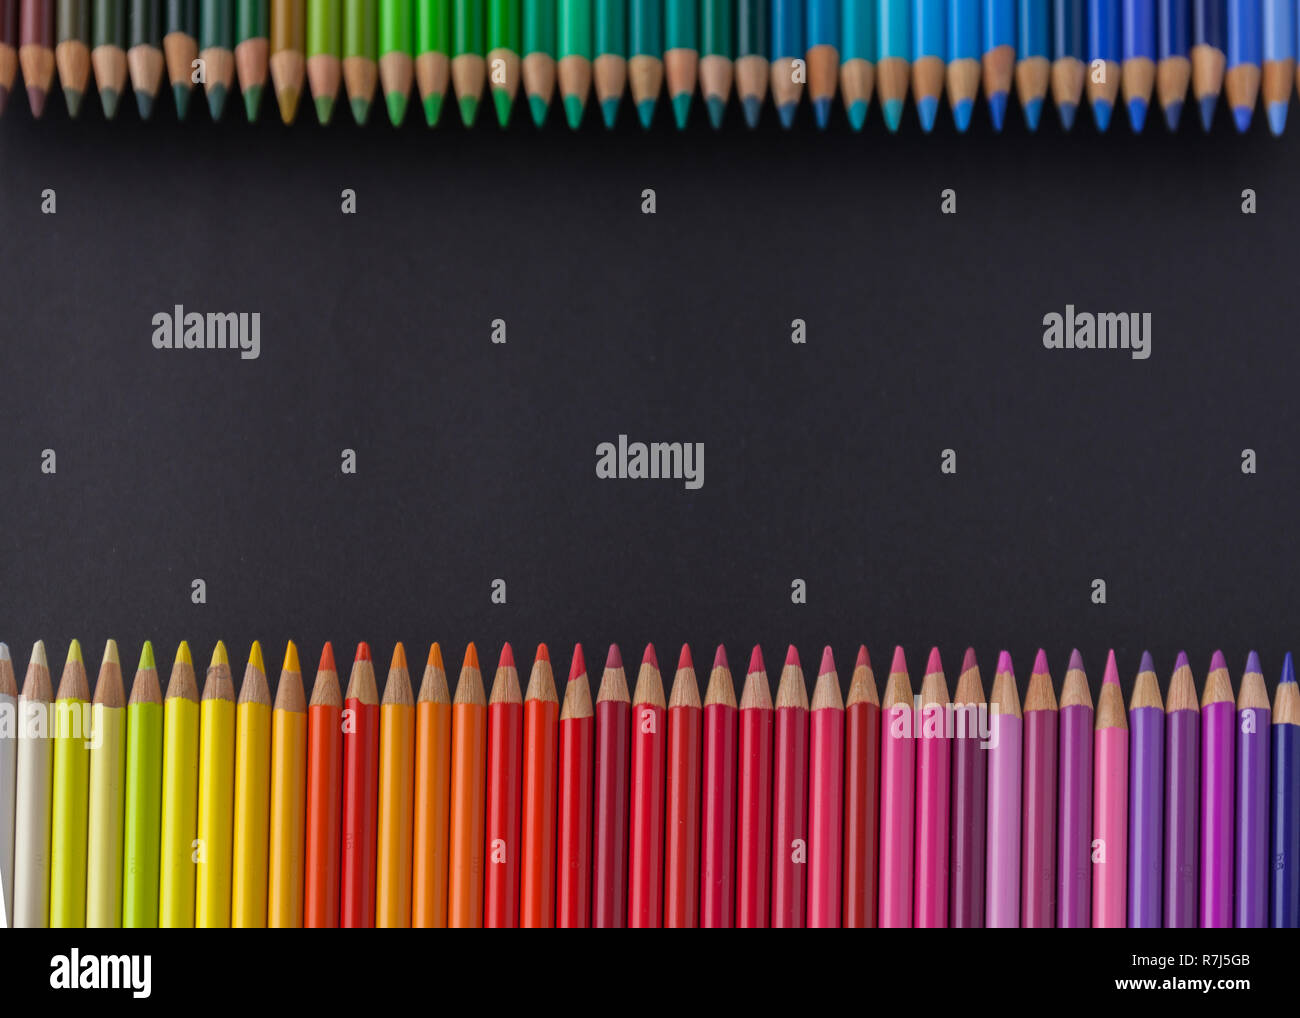 Set de crayons de couleurs de tons froids sur un fond noir. Mock-up Banque D'Images